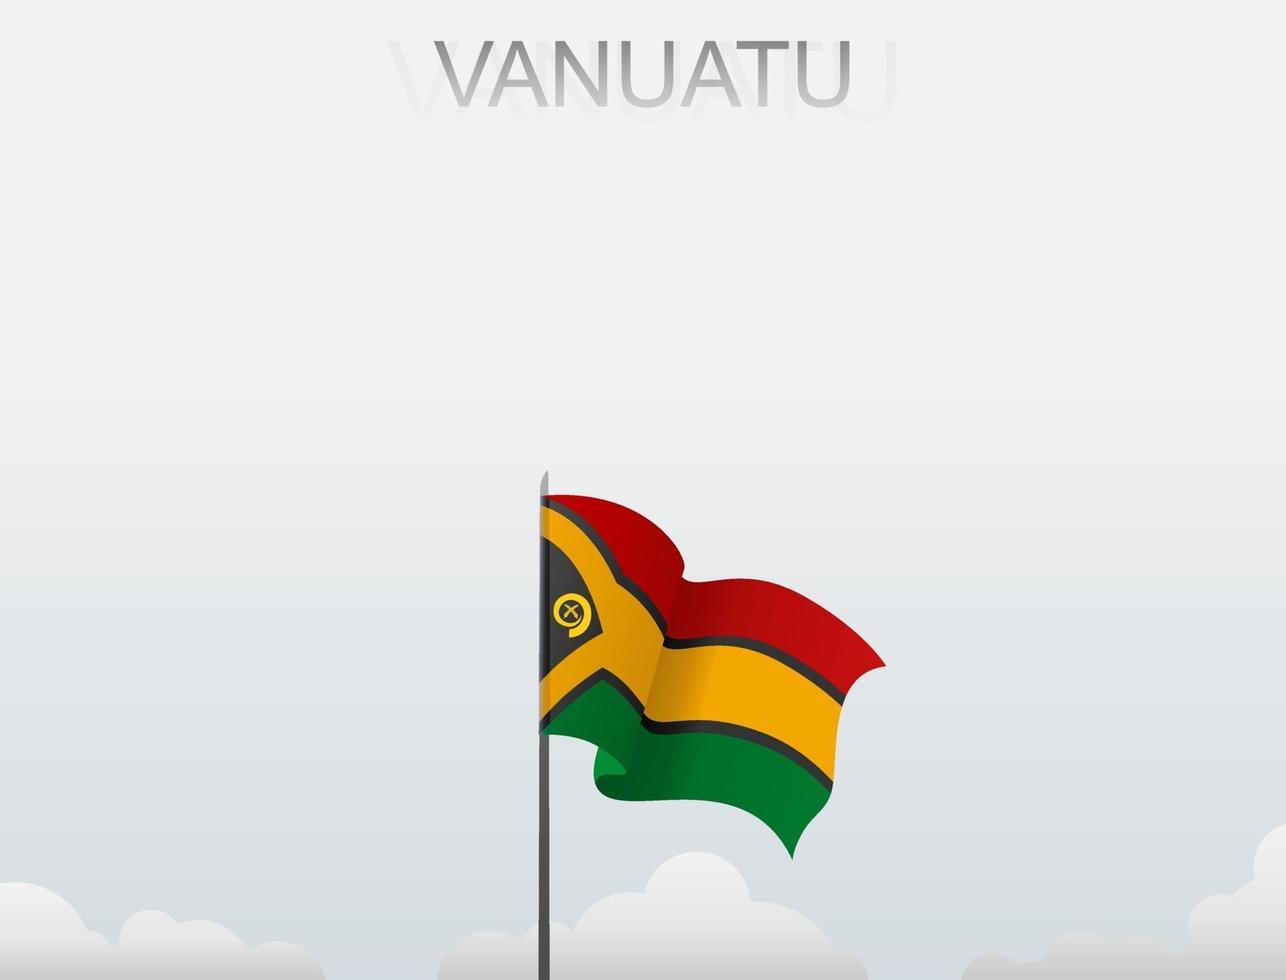 a bandeira de vanuatu está hasteada em um mastro alto sob o céu branco vetor